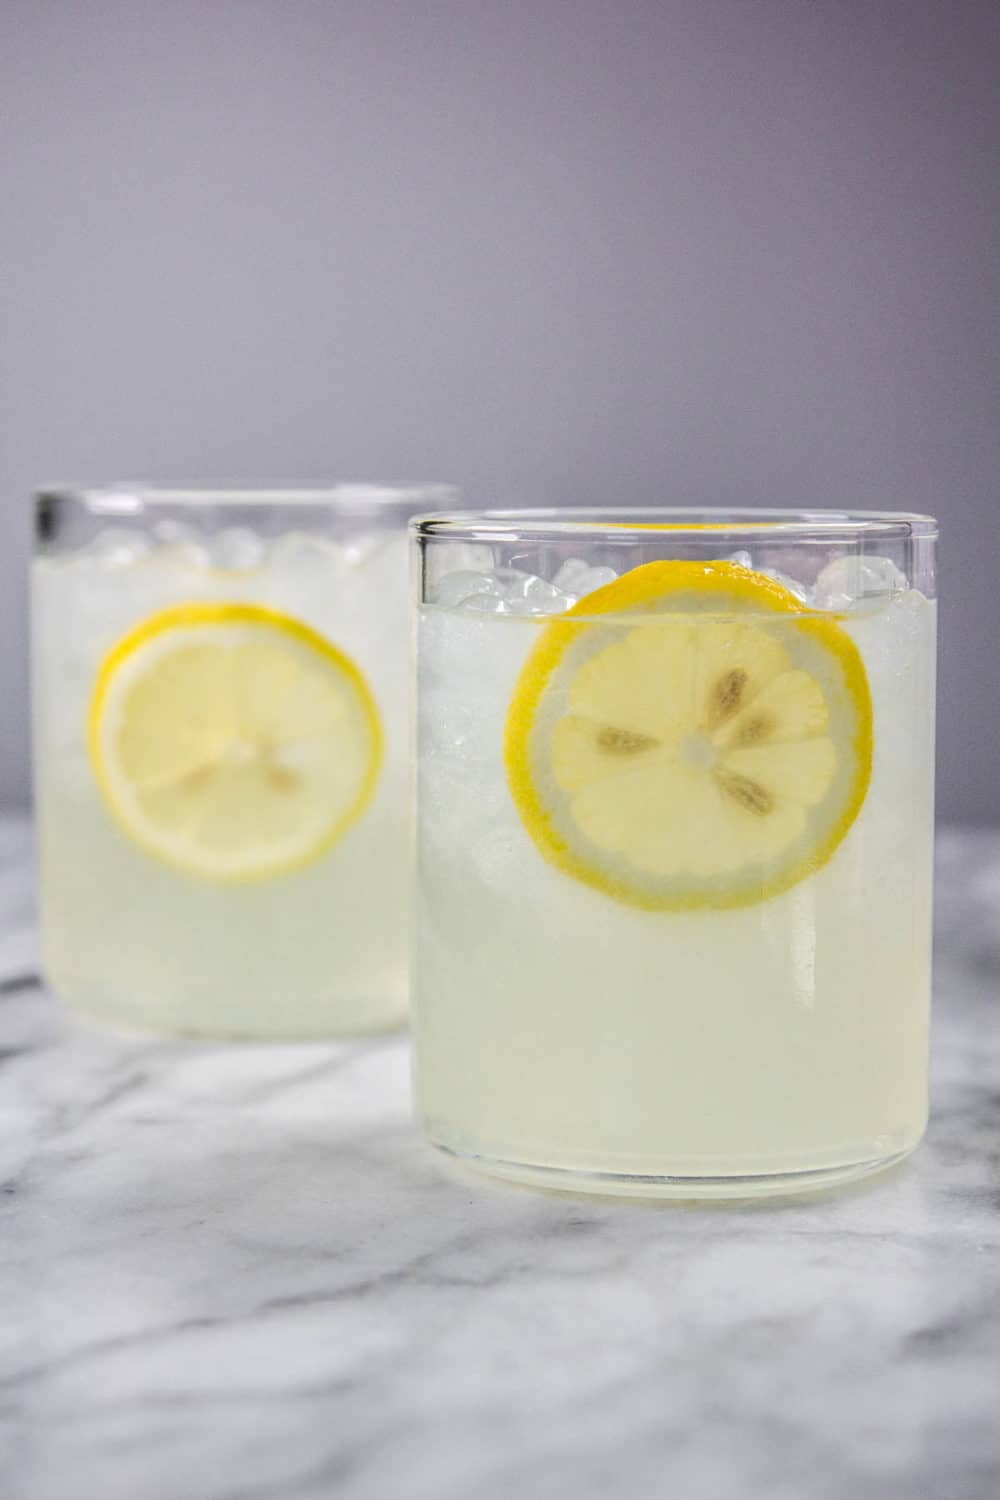 Two glasses of lemonade.